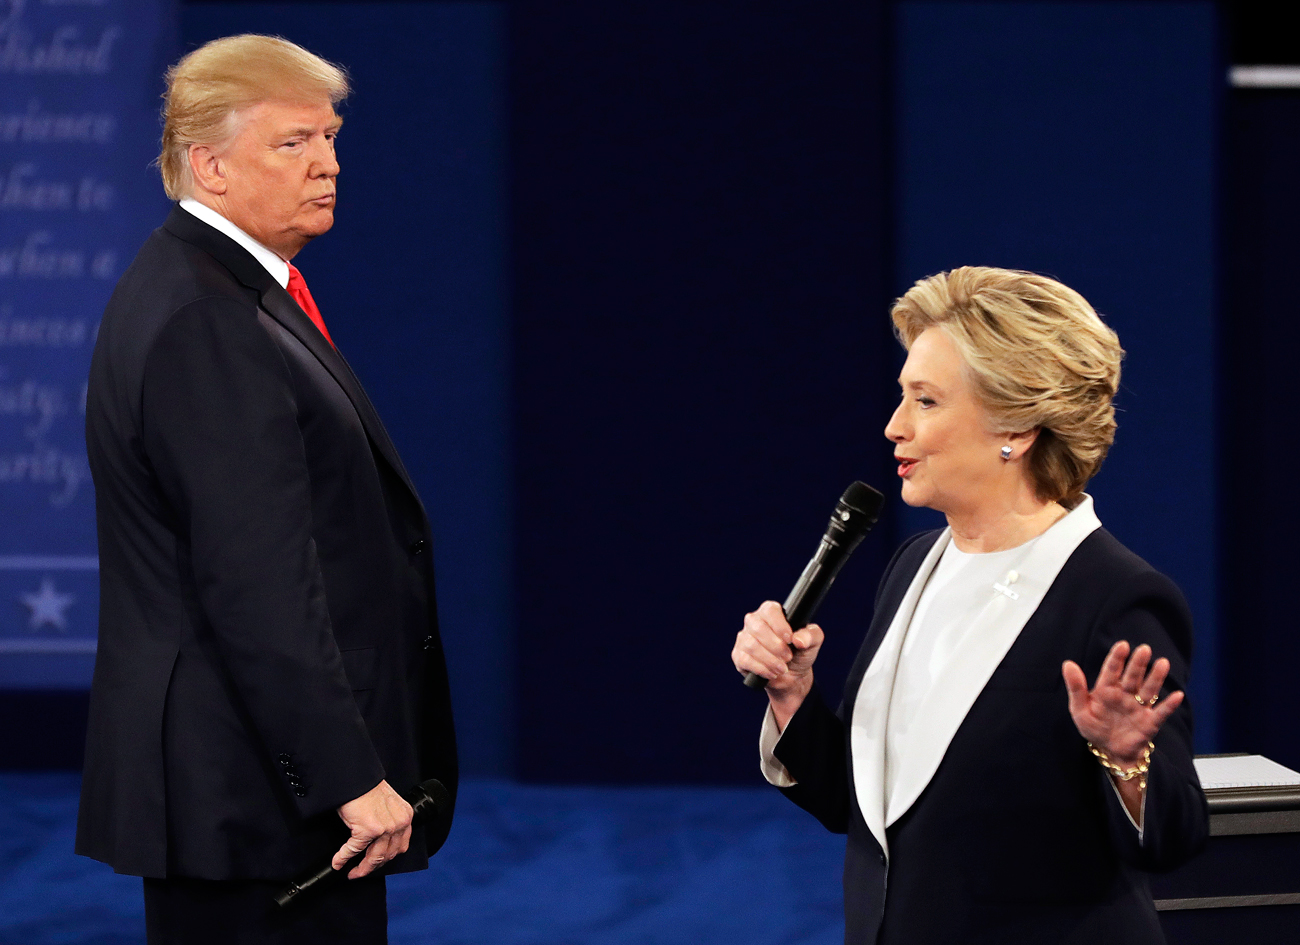 Les candidats à la présidence US Donald Trump (à gauche) et Hillary Clinton.